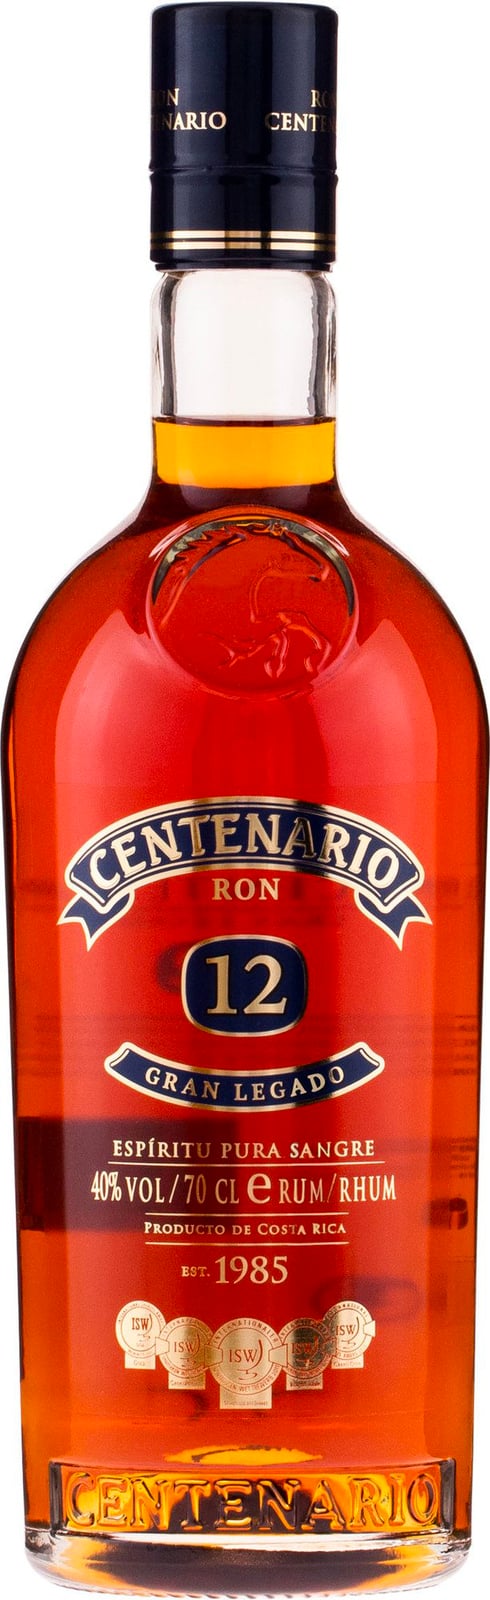 Legado Ron Rum year Centenario Gran 12